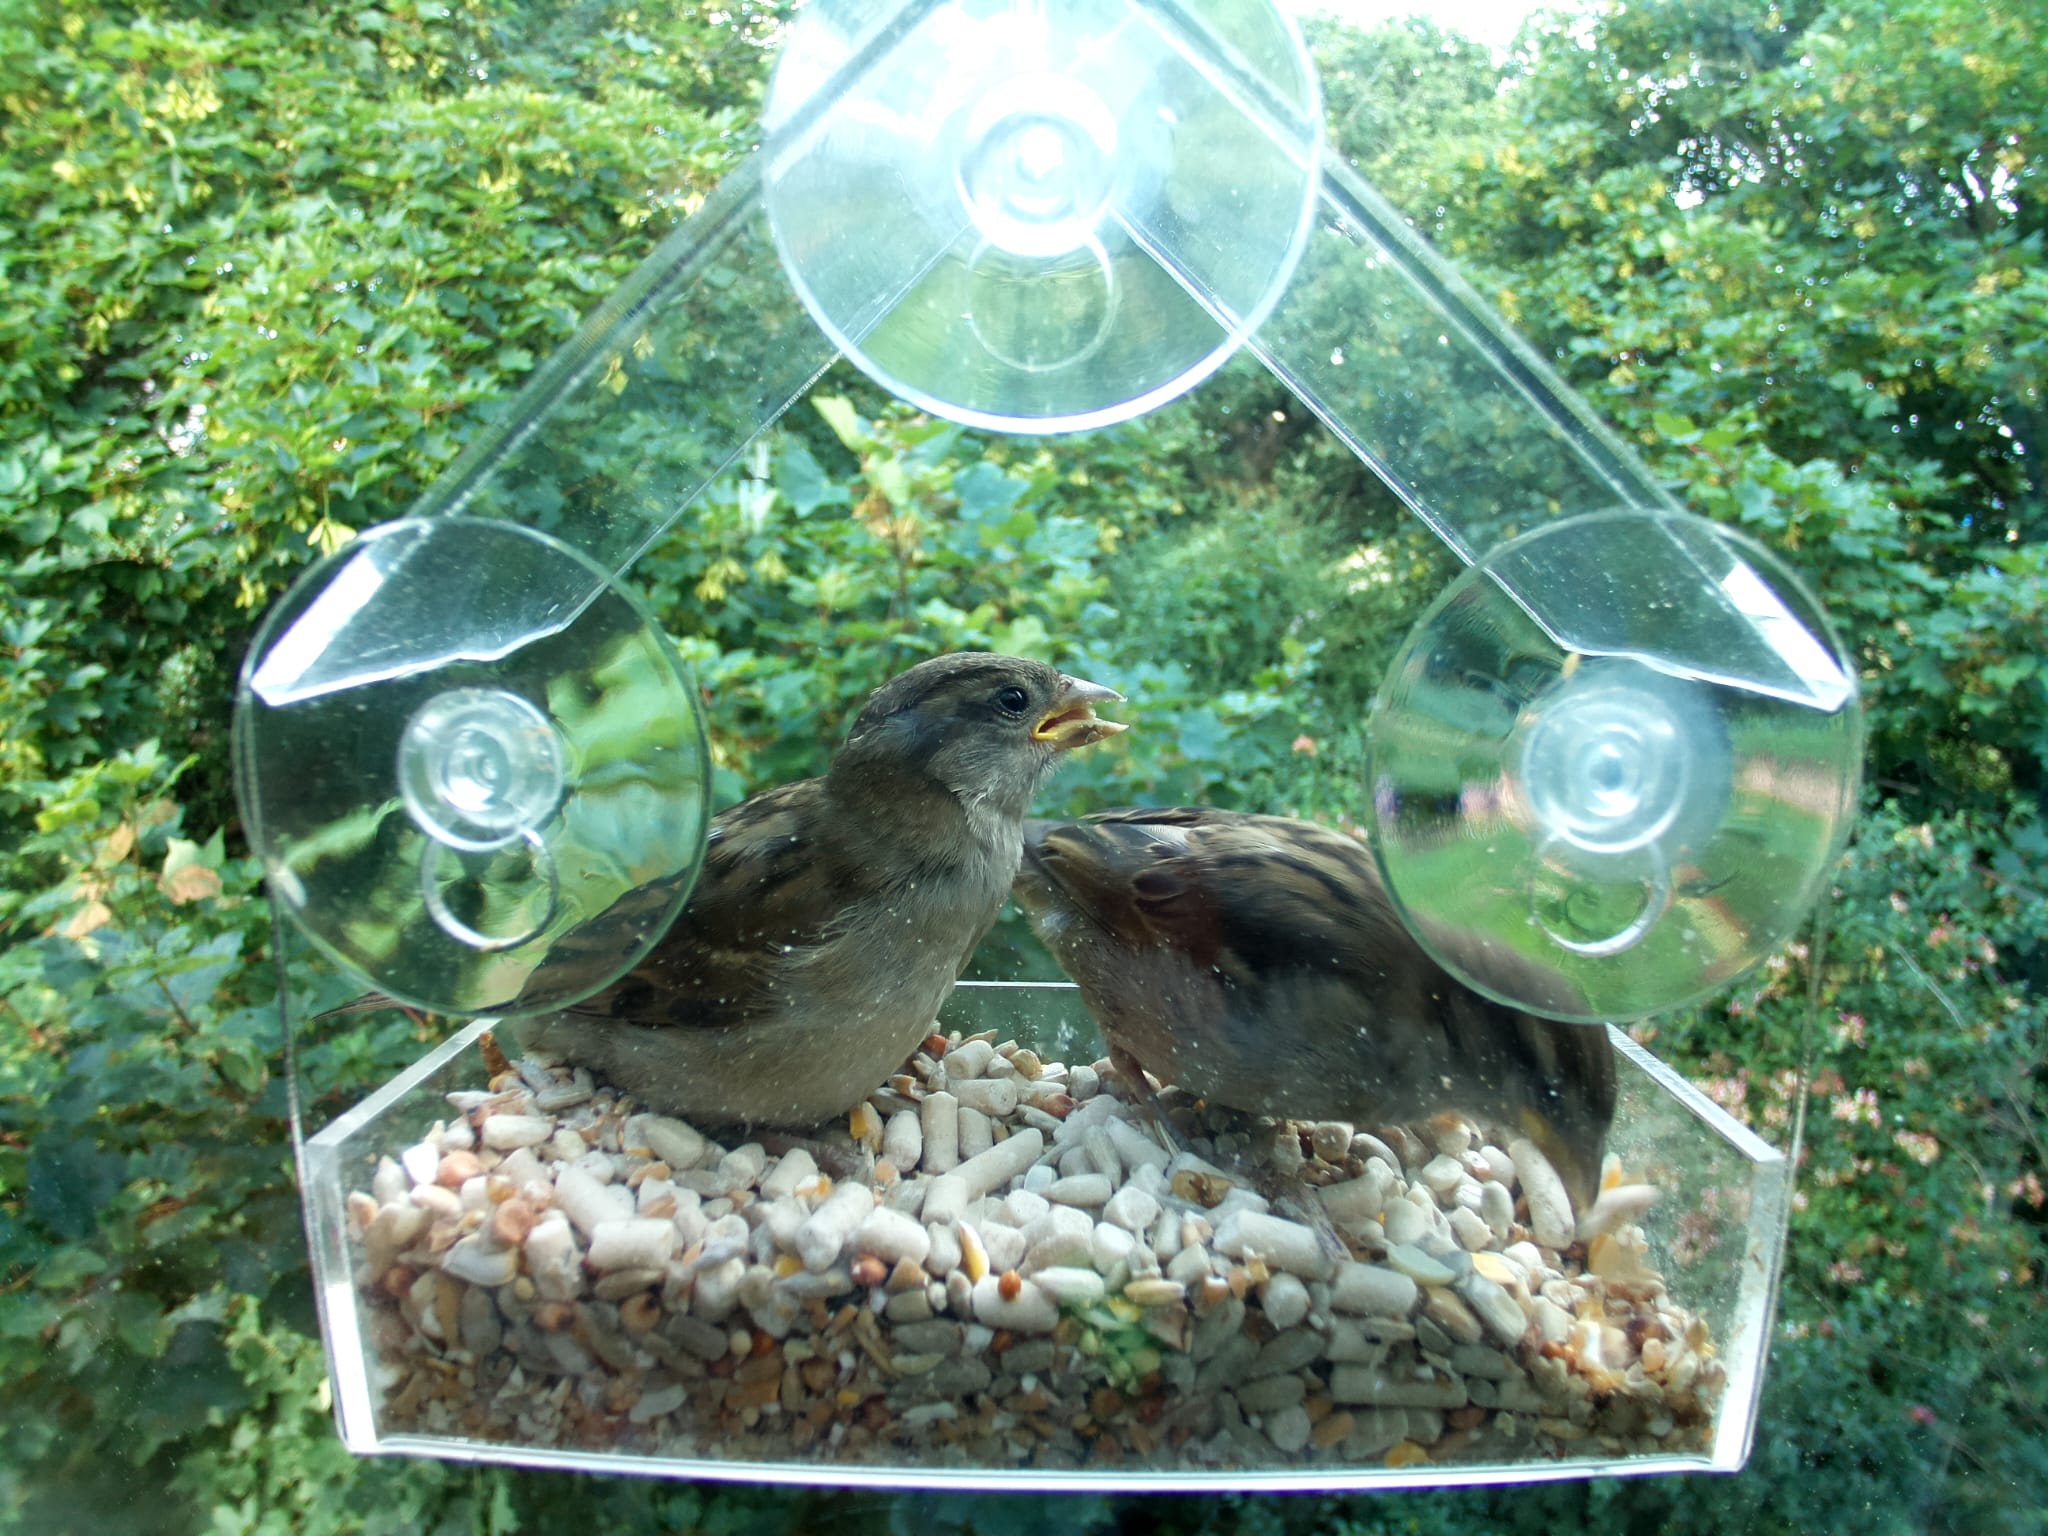 2 Sparrows